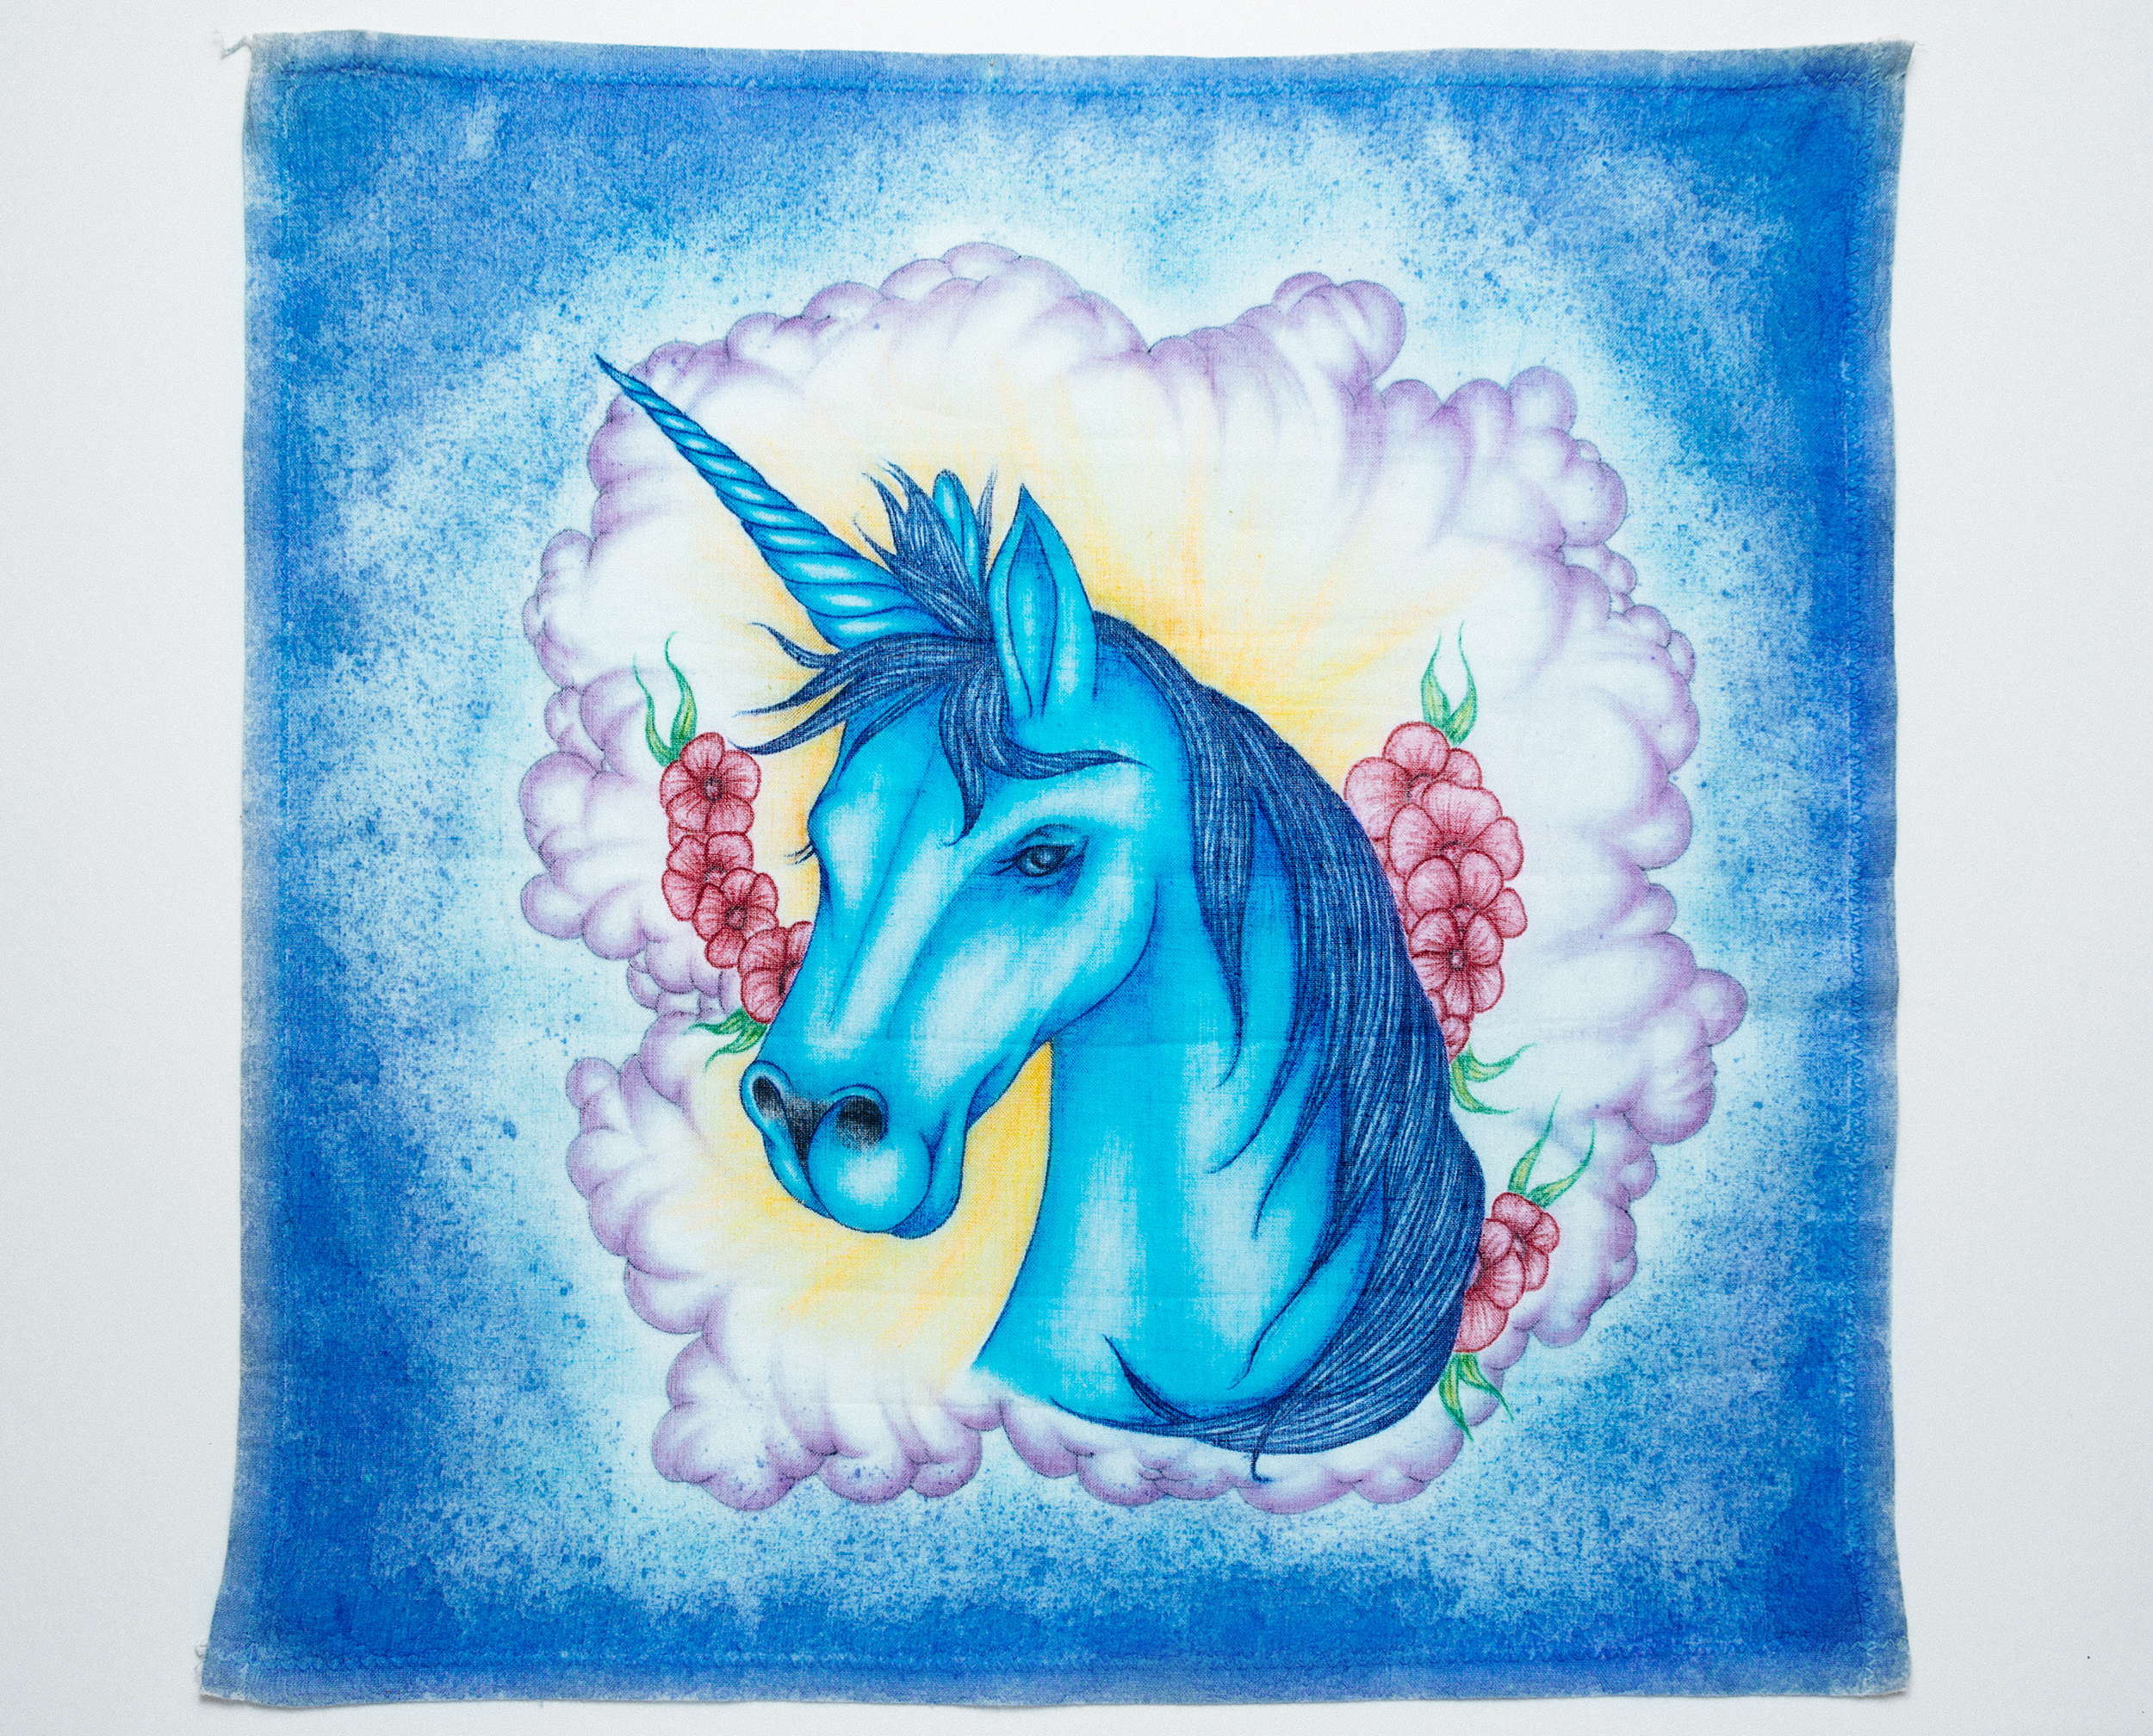 A paño of a blue unicorn. 